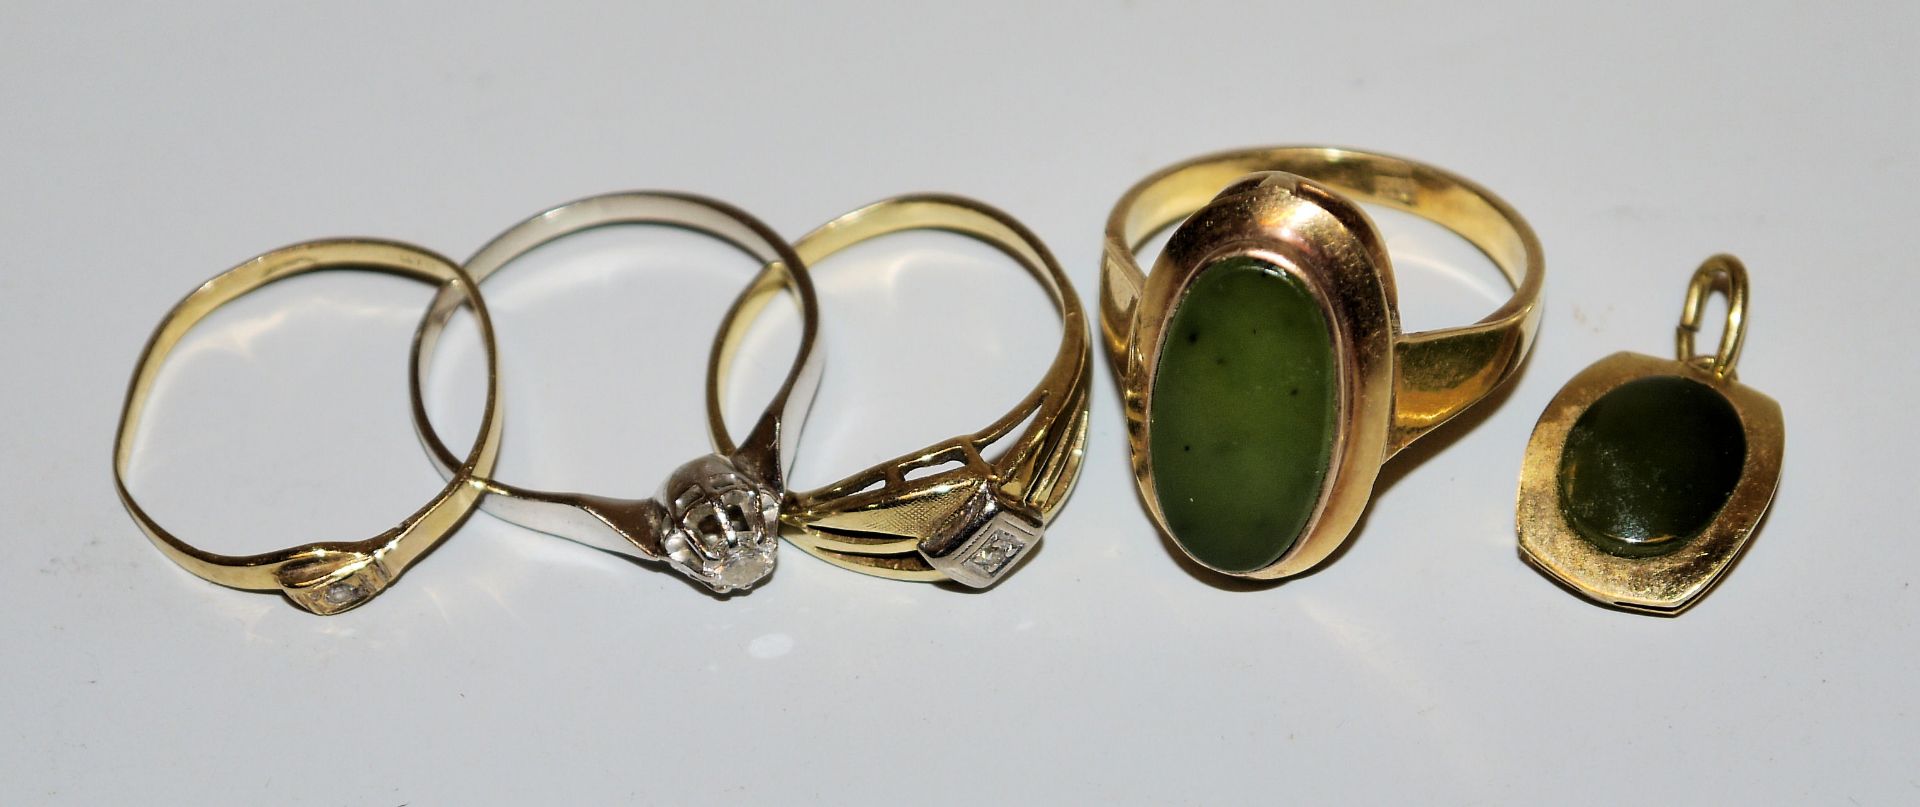 Jade-Ring mit Anhänger, 2 Brillantringe und Ring mit Stein, Gold